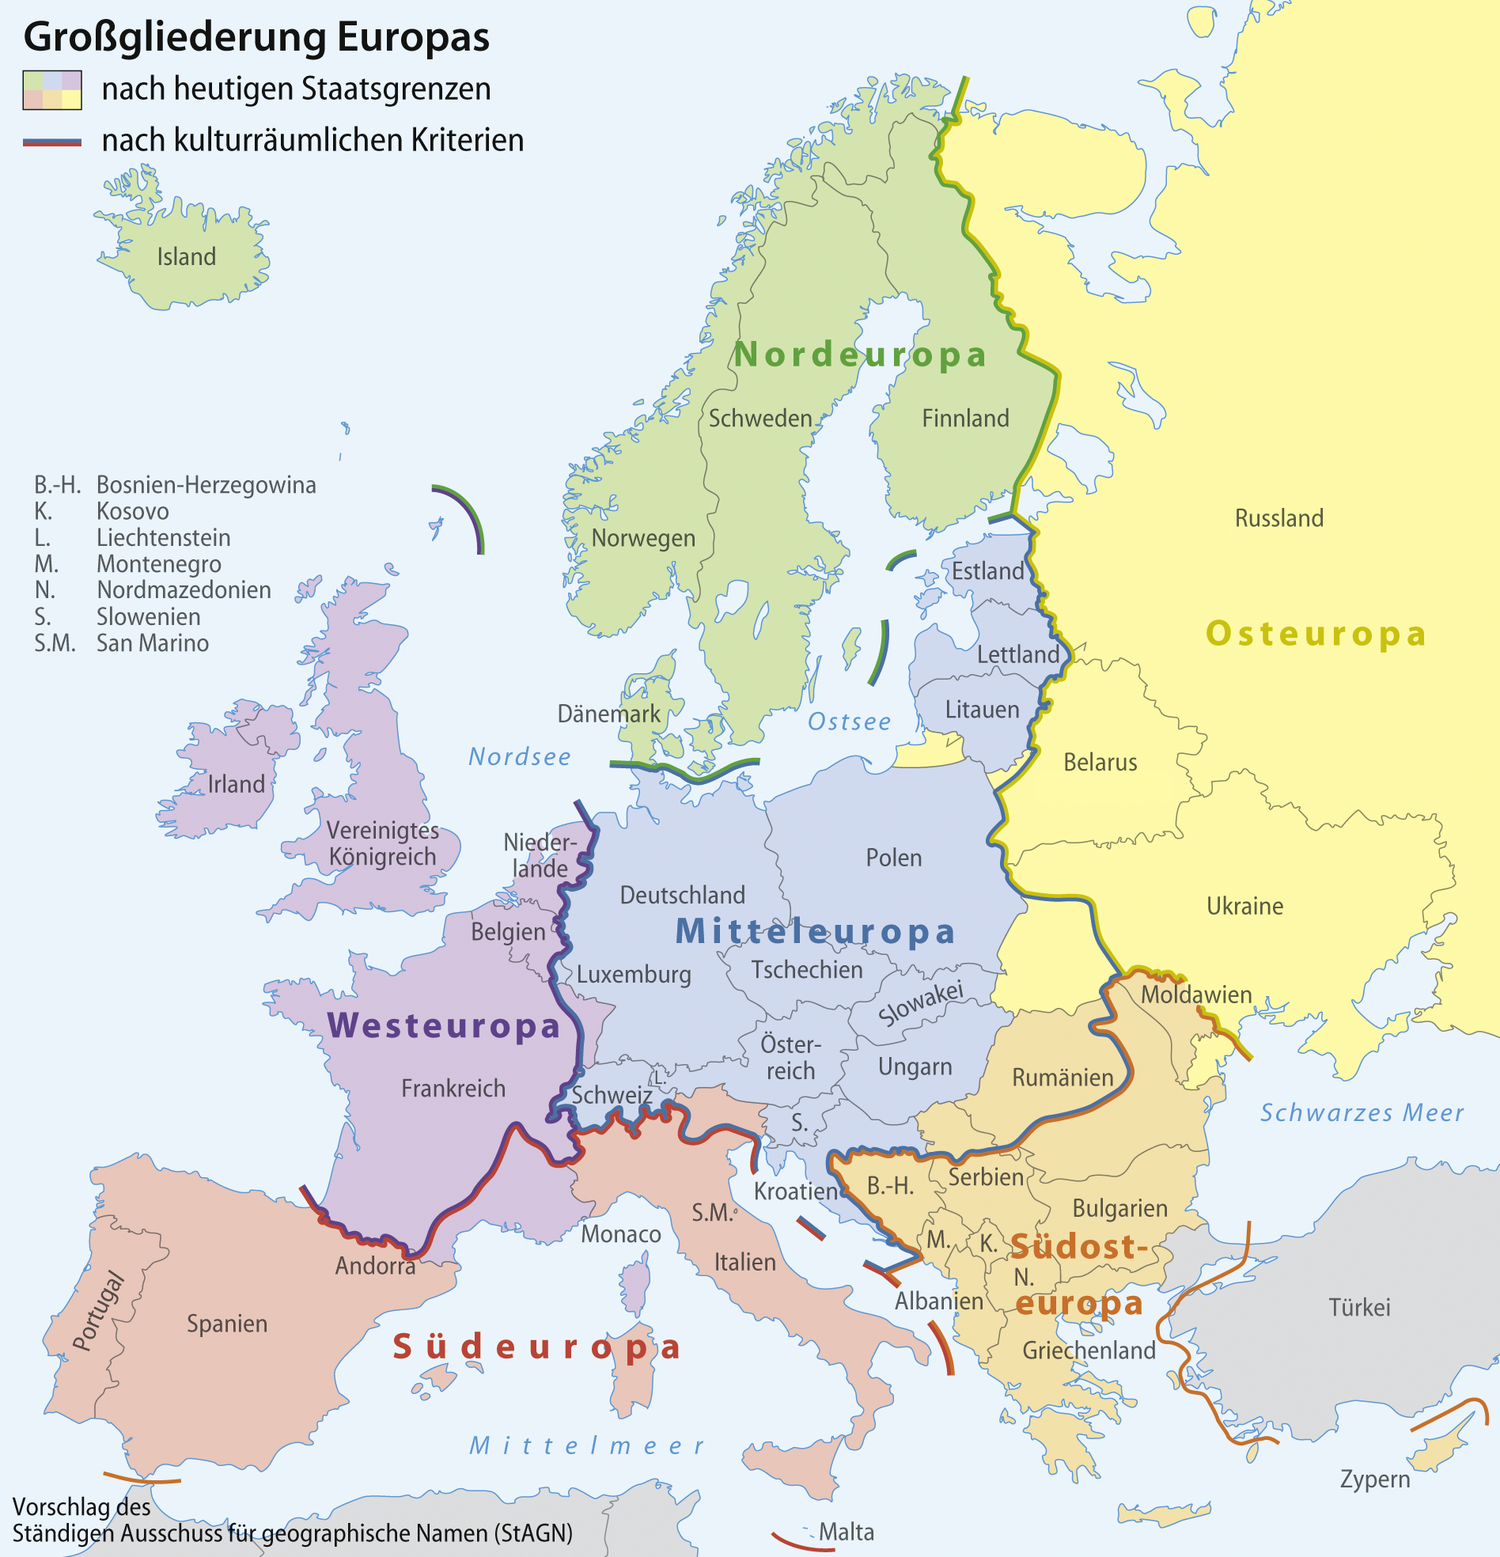 Alemanha e Escandinávia - Europa Nórdica